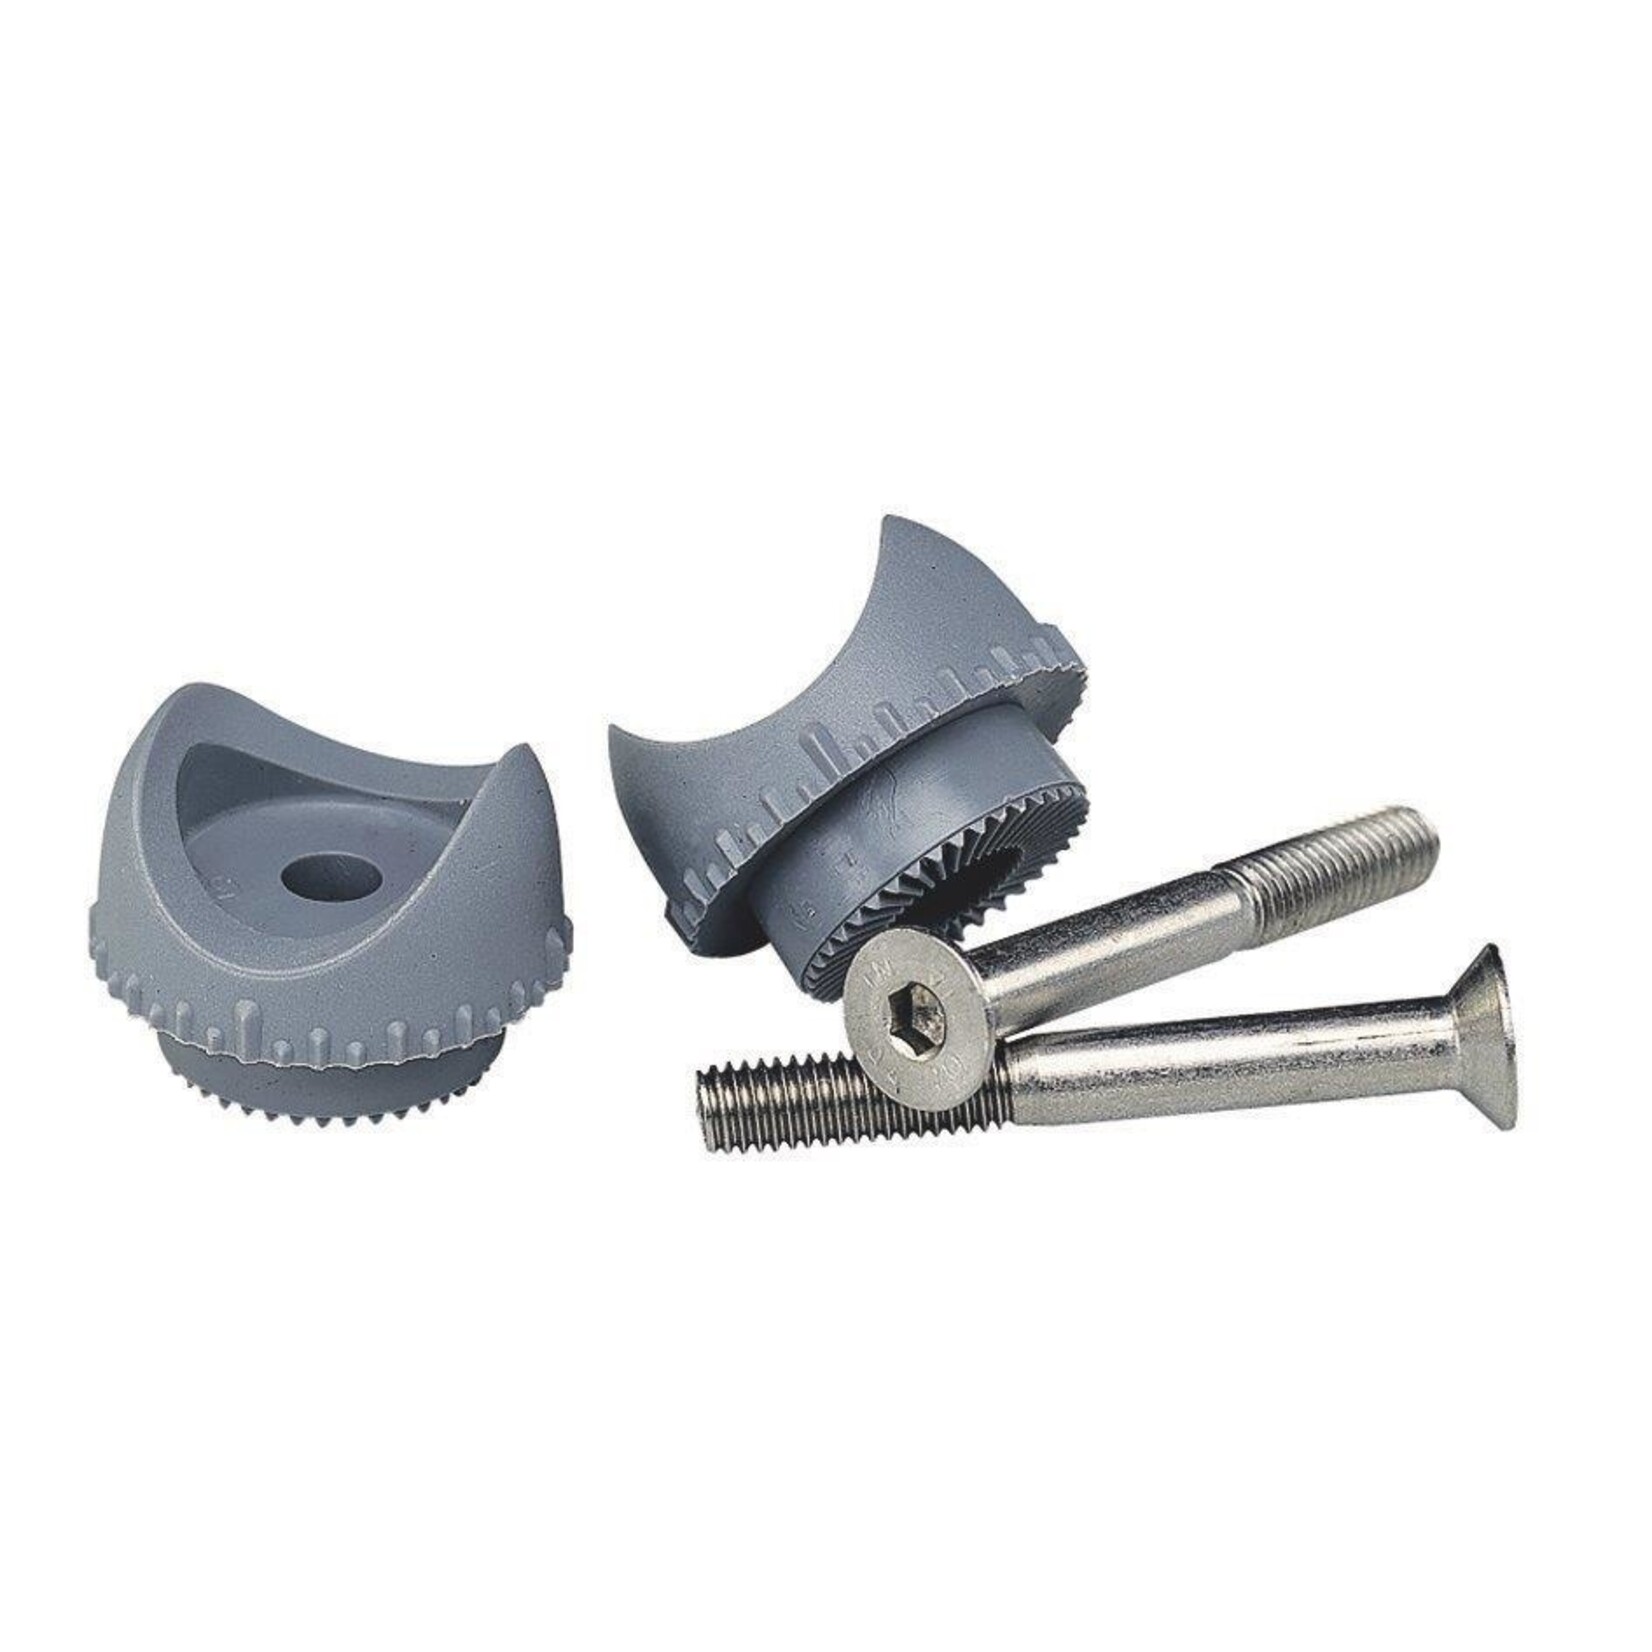 Plastimo Kit 2 tips + adjustable step screw